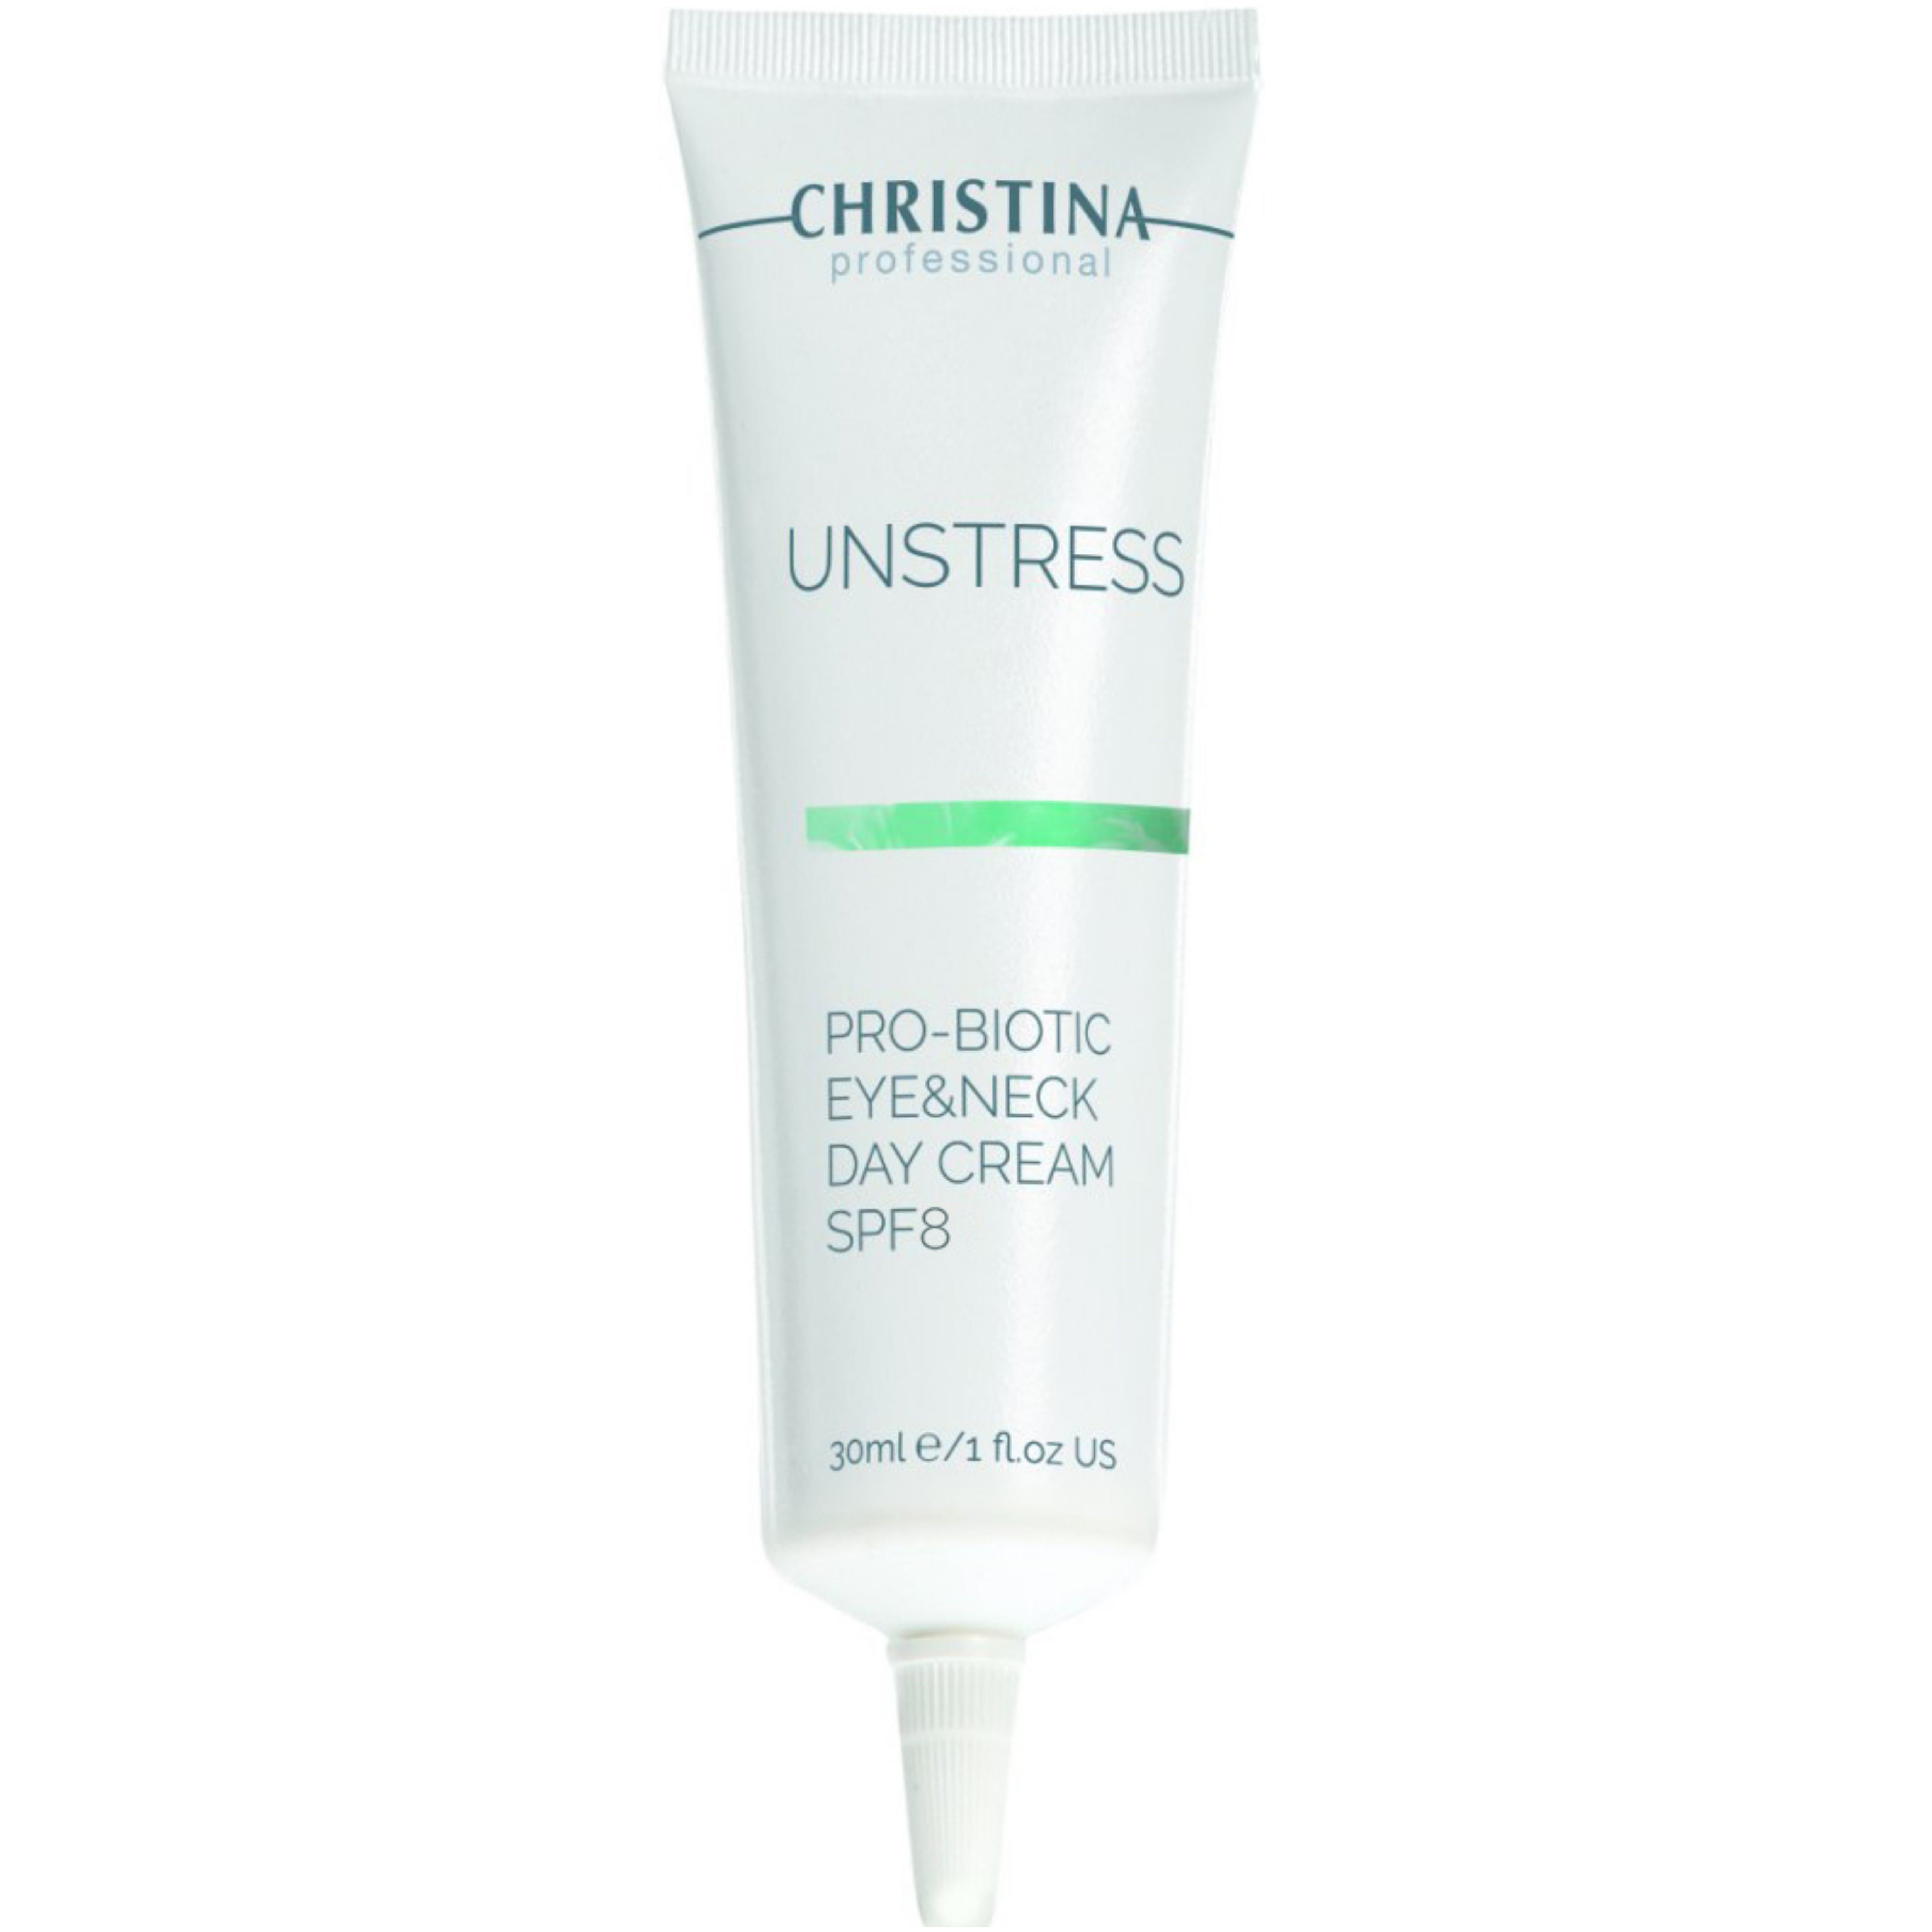 Денний крем для шкіри навколо очей та шиї Christina Unstress Probiotic Day Cream Eye & Neck SPF 8 30 мл - фото 1